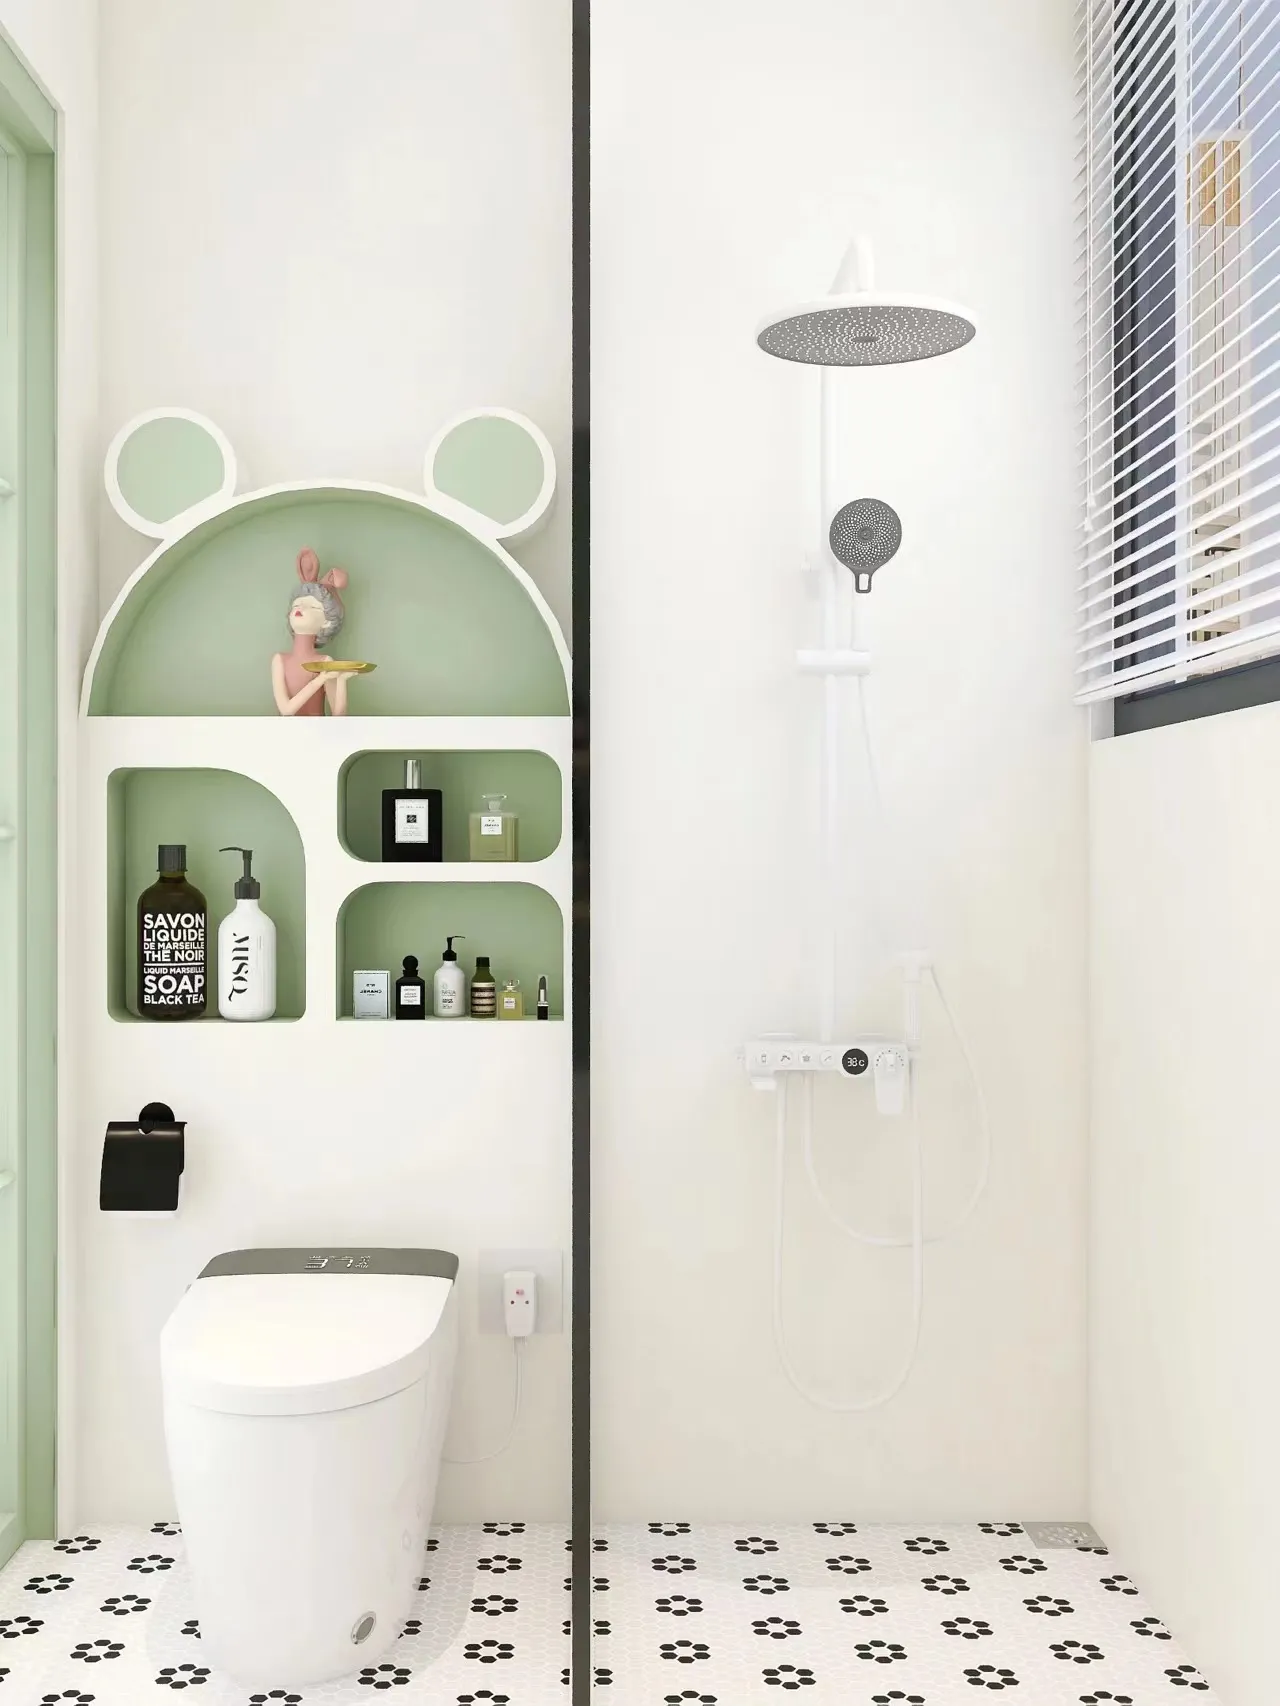 浅绿色系浴室，美到想住在厕所里
微水泥搭配清新的绿色，是春天的配色，简约又高级，超级清新~ #一抹撩人的绿色#